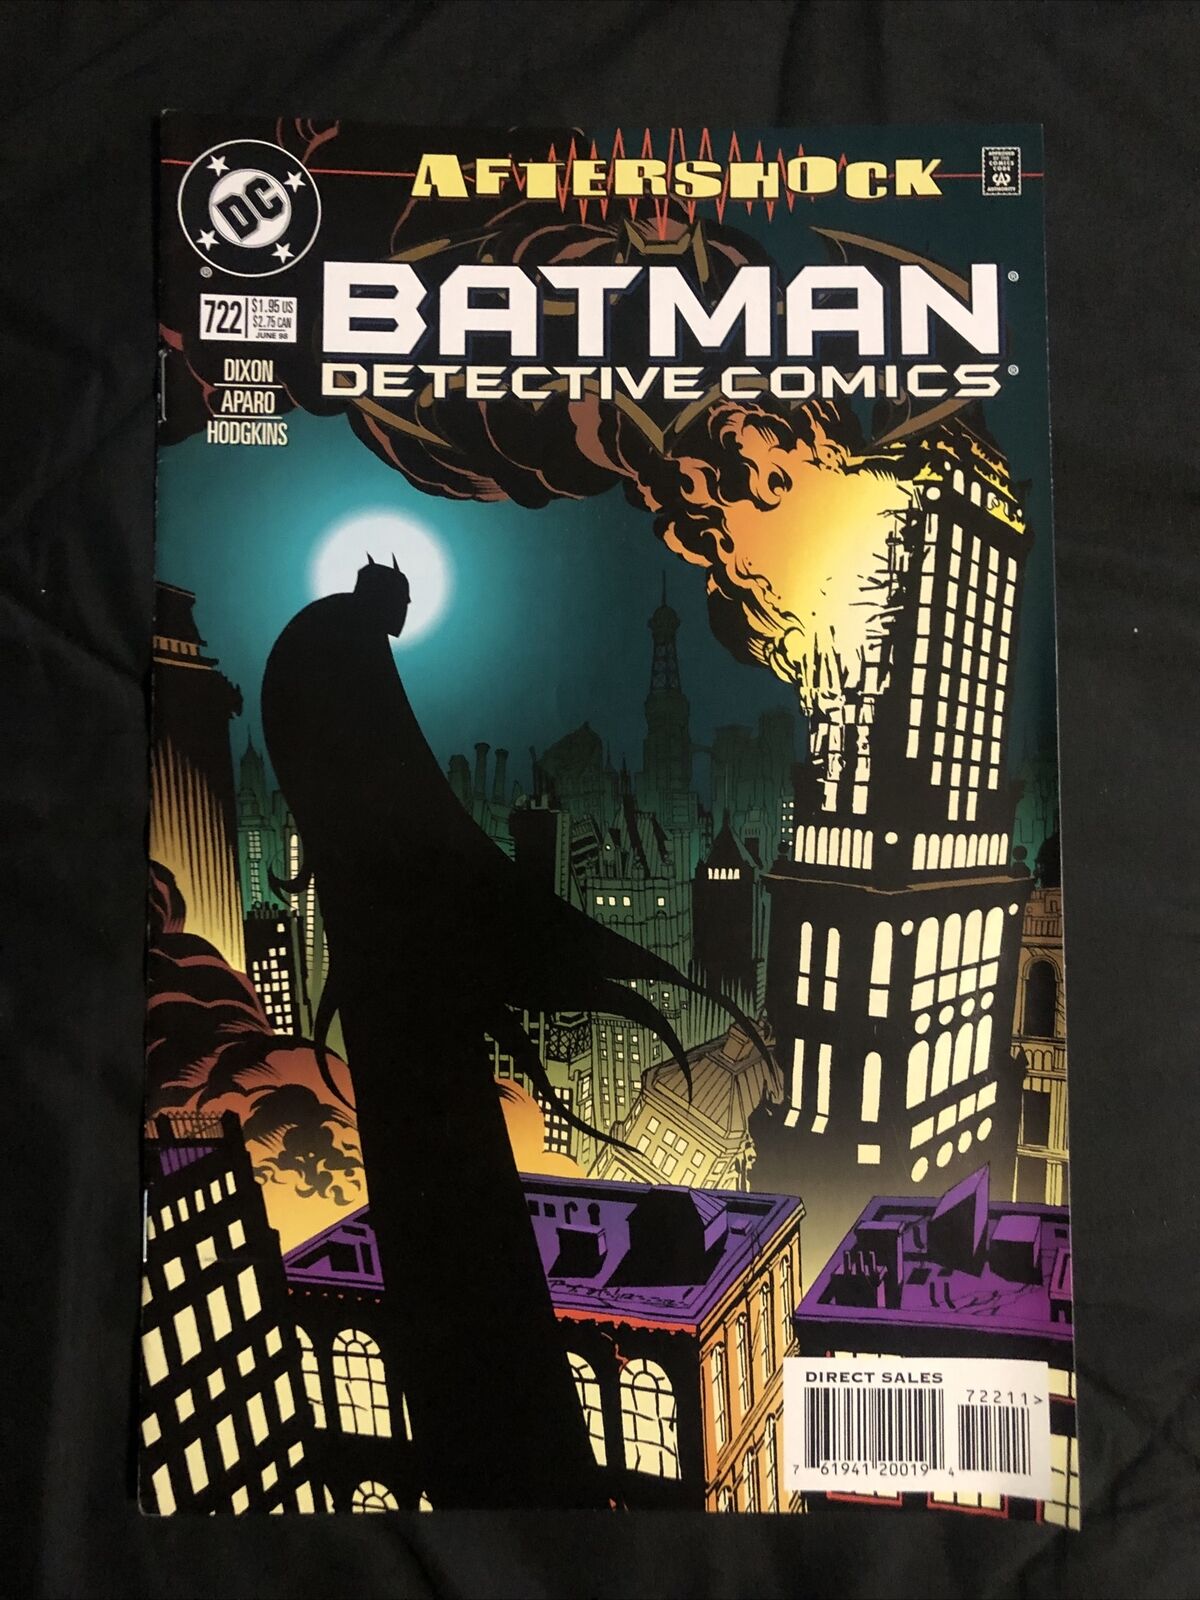 Batman Detective Comics #722 - June 1998 / DC comics